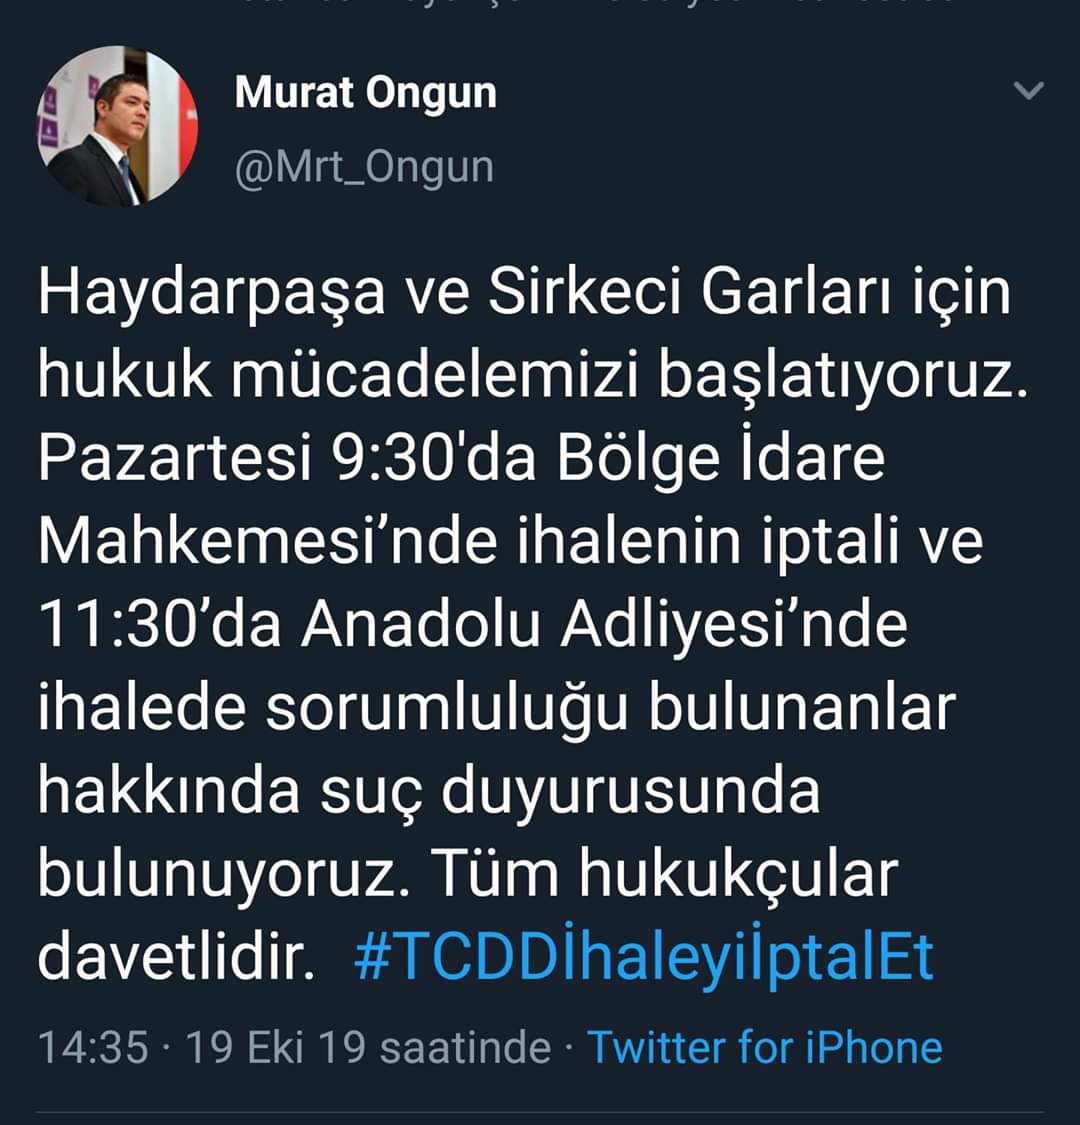 @ekrem_imamoglu Şaşırmadık akp vatandaş için değil bir avuç yandaş için mafya usulüyle çalışan bir suç örgütü ( İstanbul halkı olarak Ekrem İmamoğlu,nun arkasında durmamız lazım) 
#Ekremimamoğluyanlızdeğildir destek olalım 👍👊👍